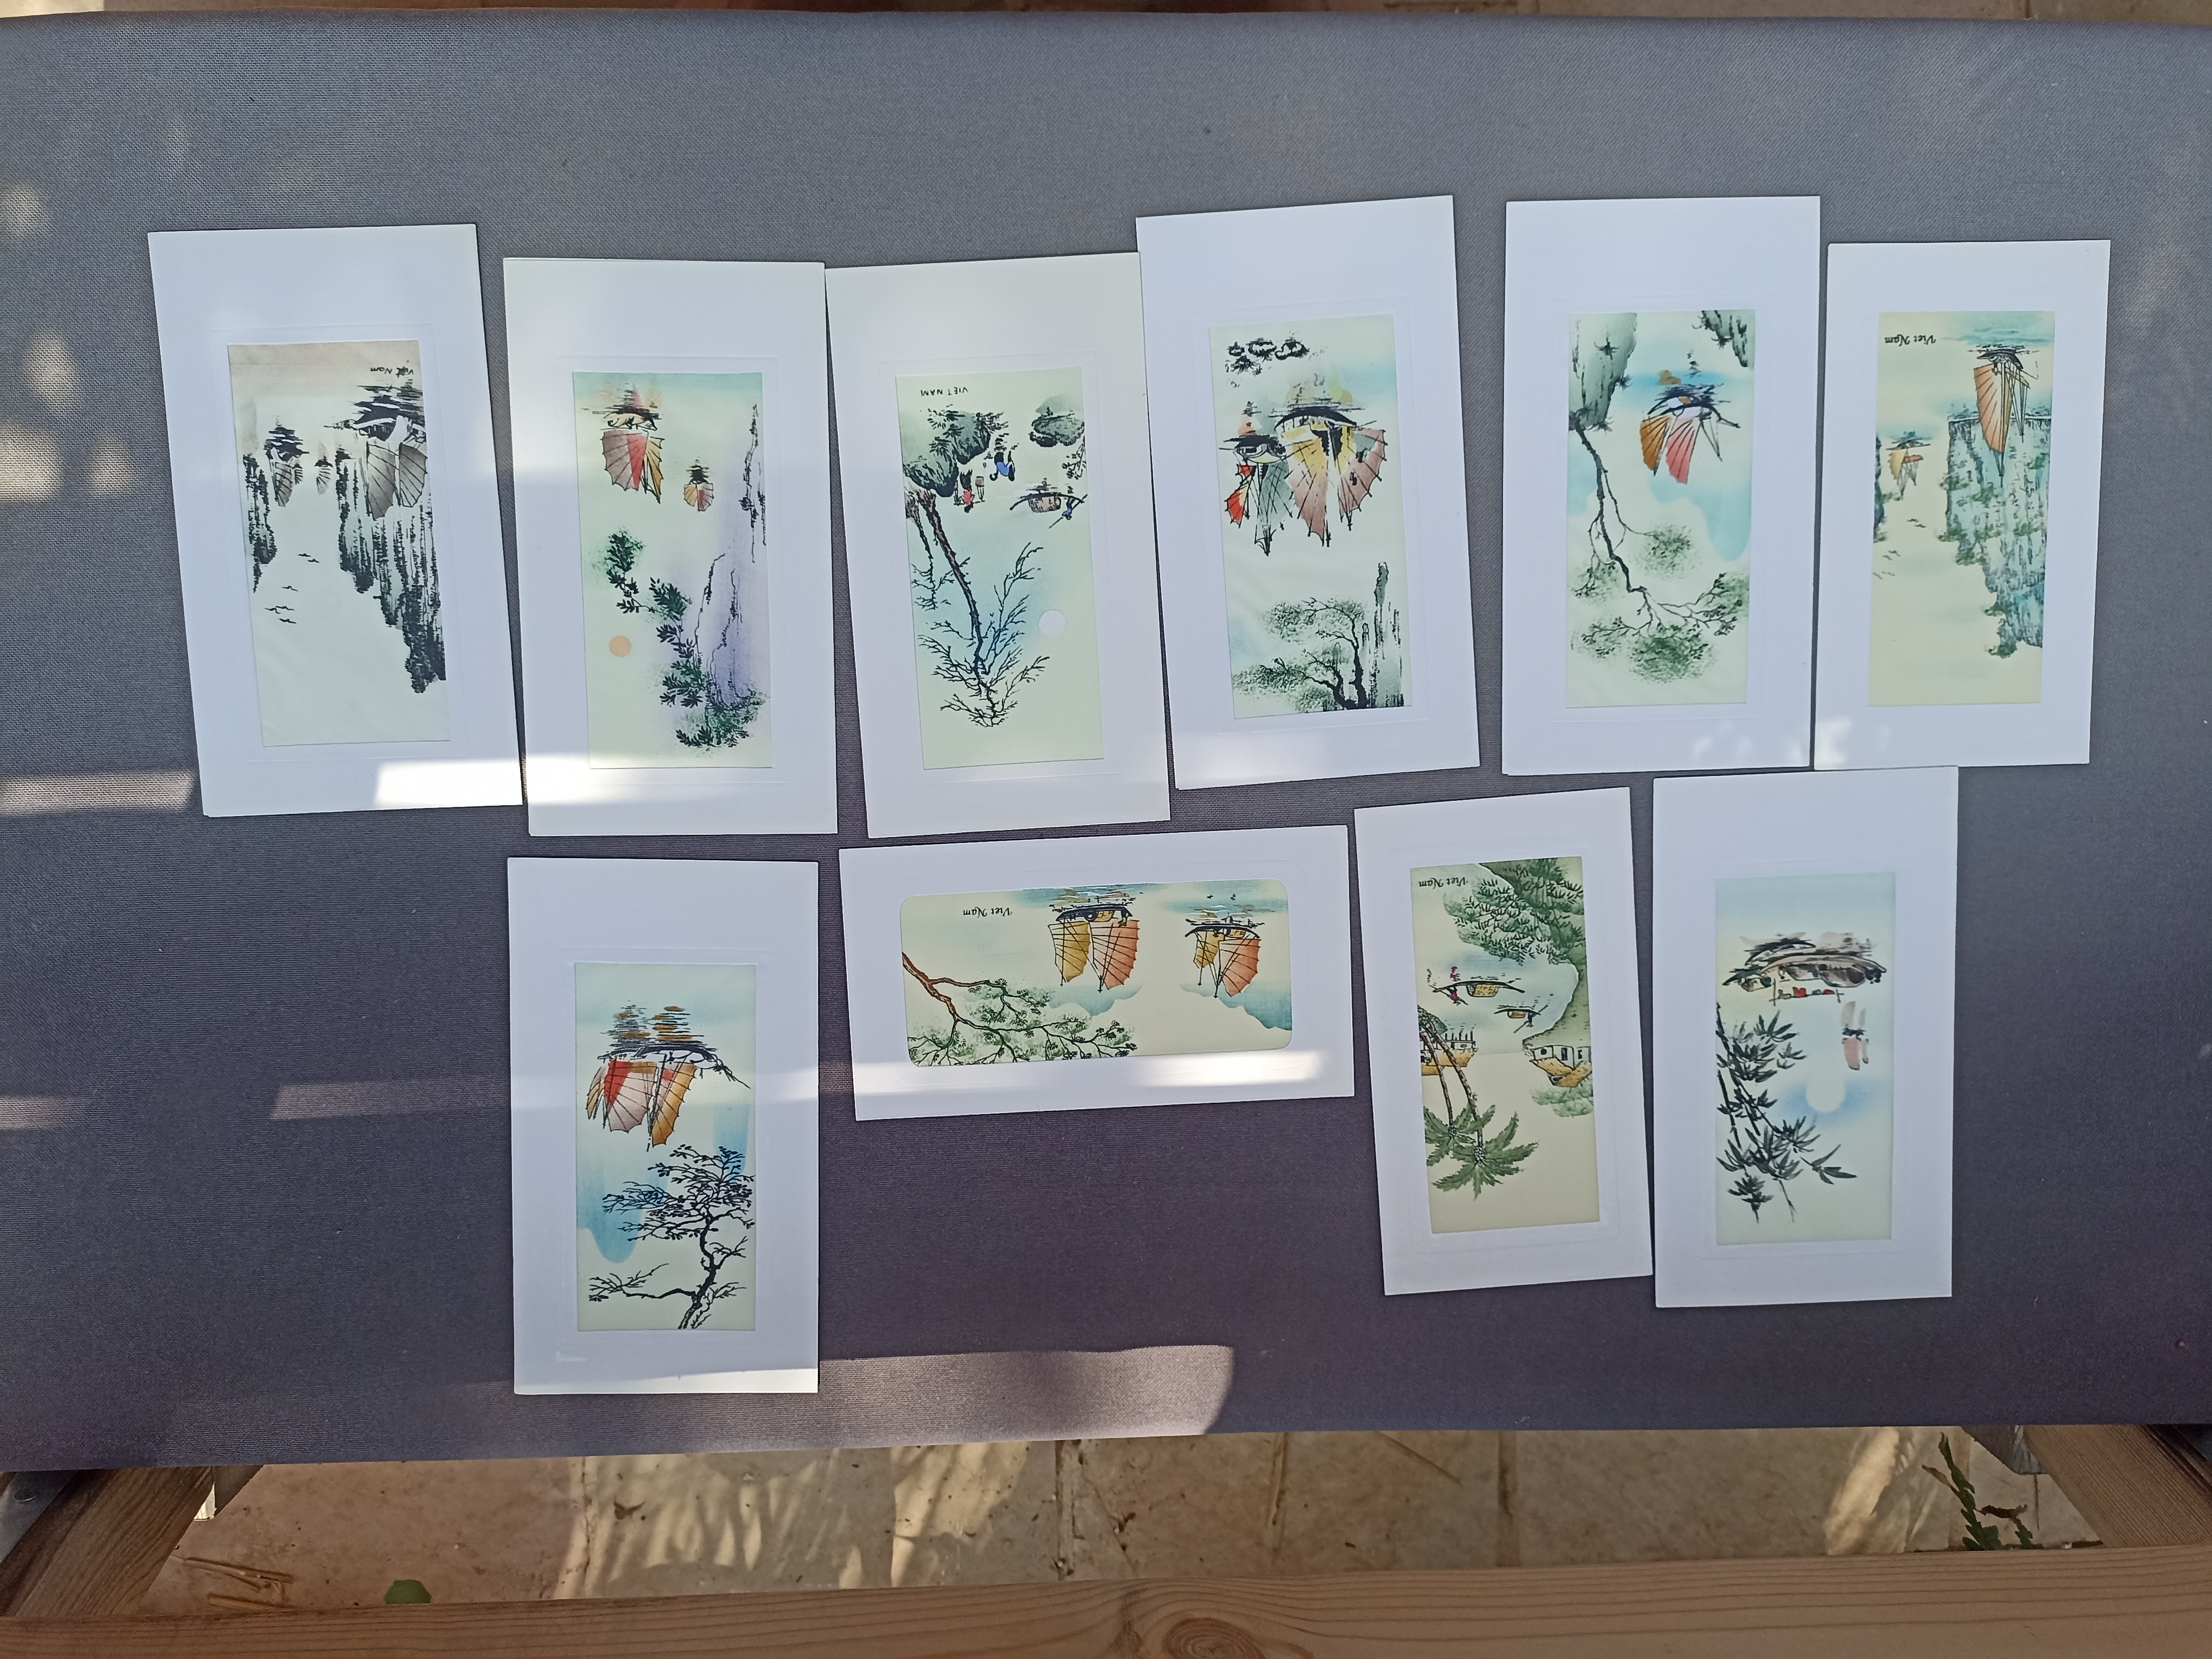 תמונה 2 ,תמונות מויטנאם מצוירות משי  למכירה בבית אריה אומנות  ציורים